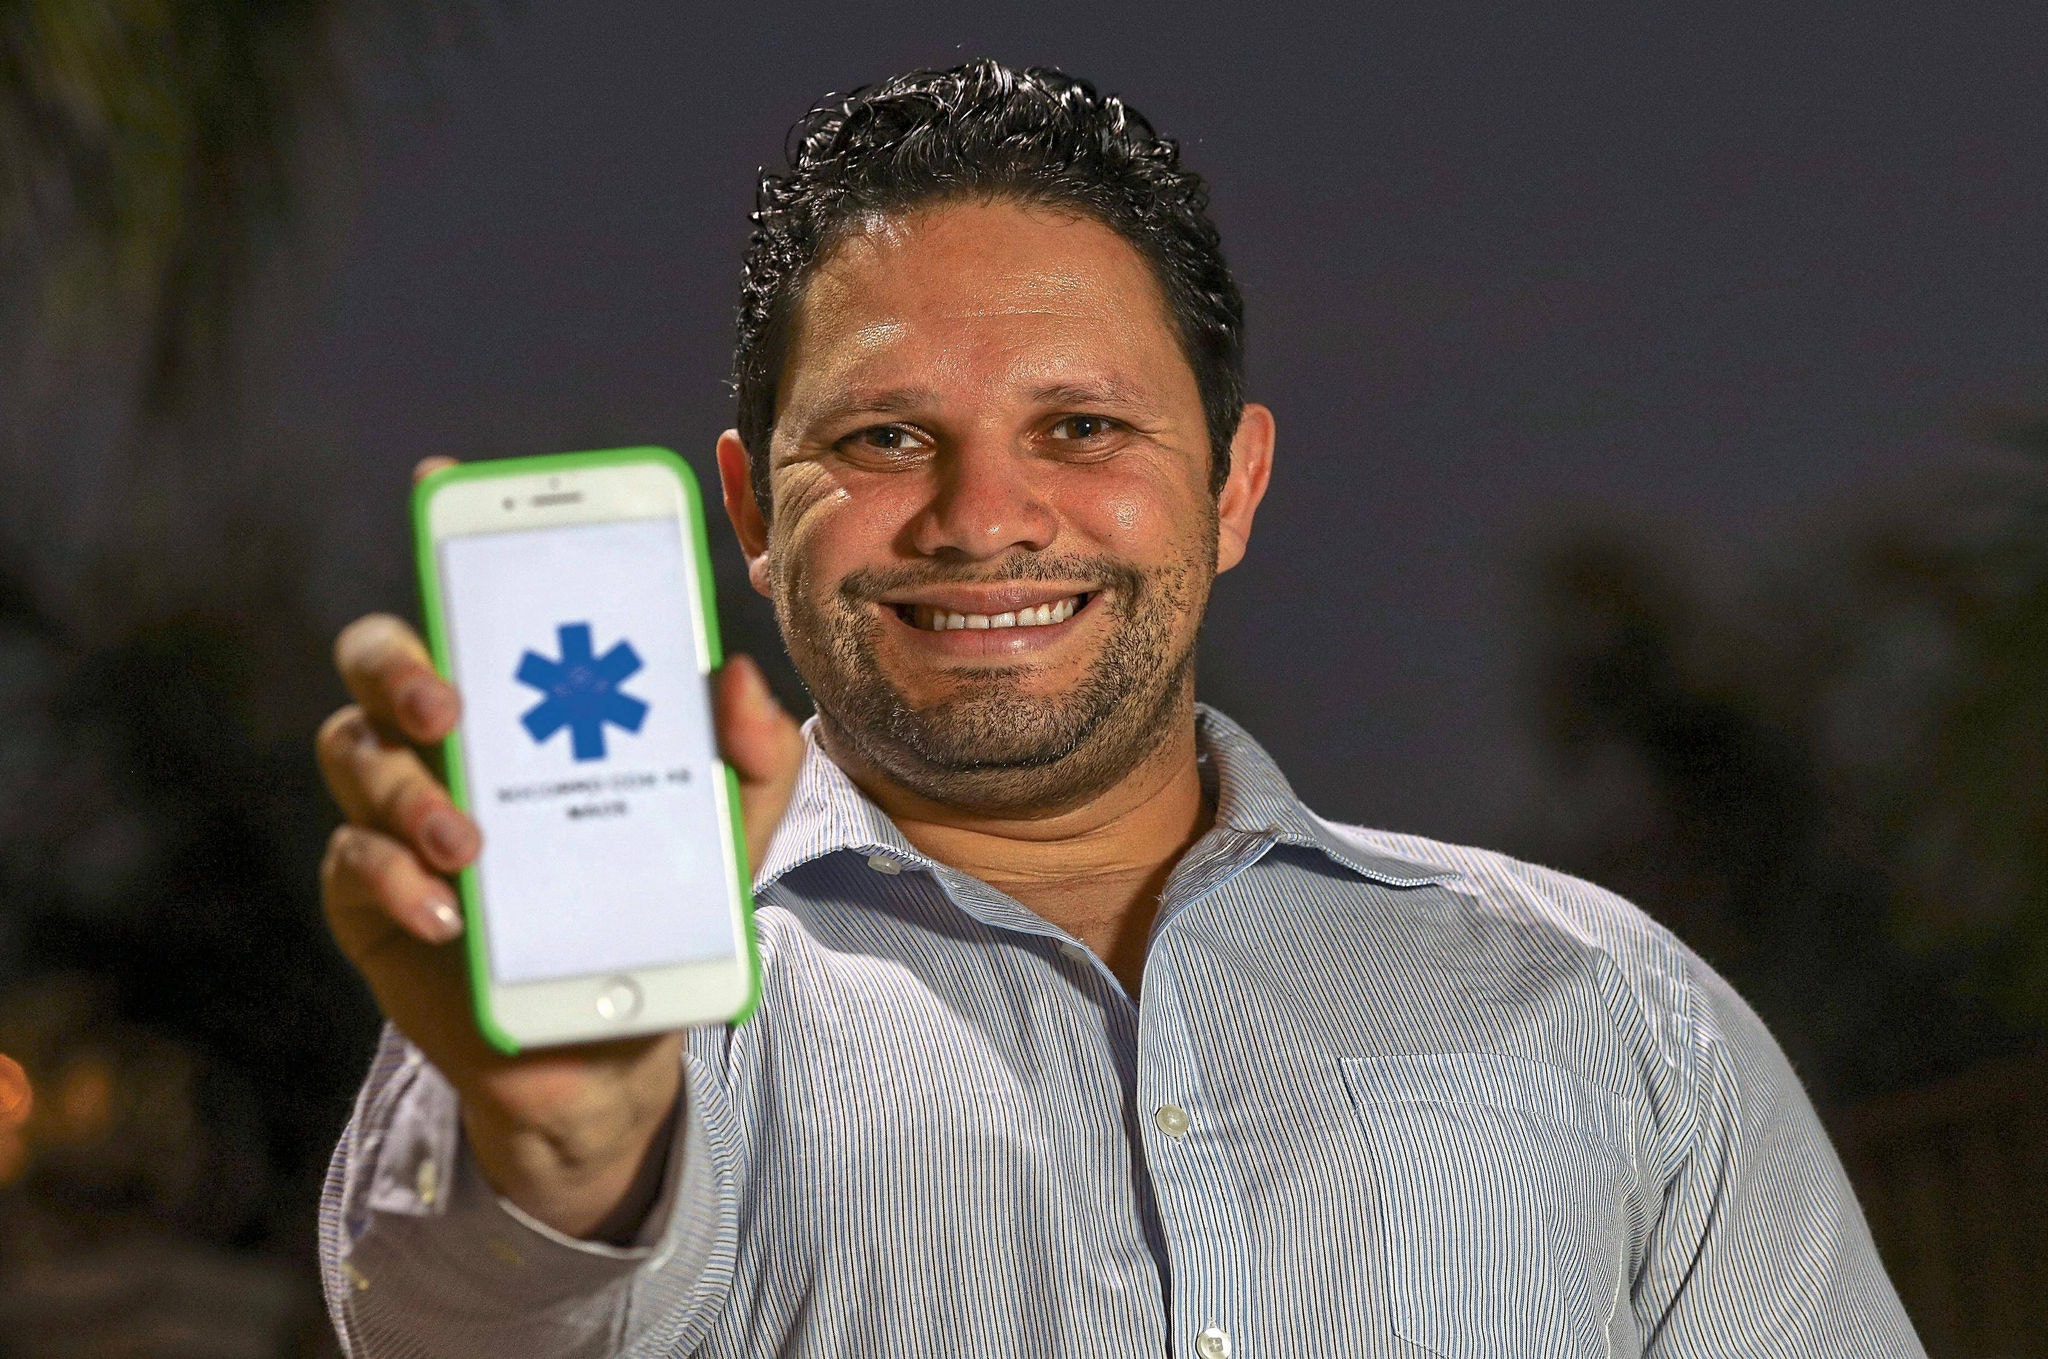 Enfermeiro e professor, Éder Júlio Rocha de Almeida criou o aplicativo Socorro pelas mãos para pessoas surdas